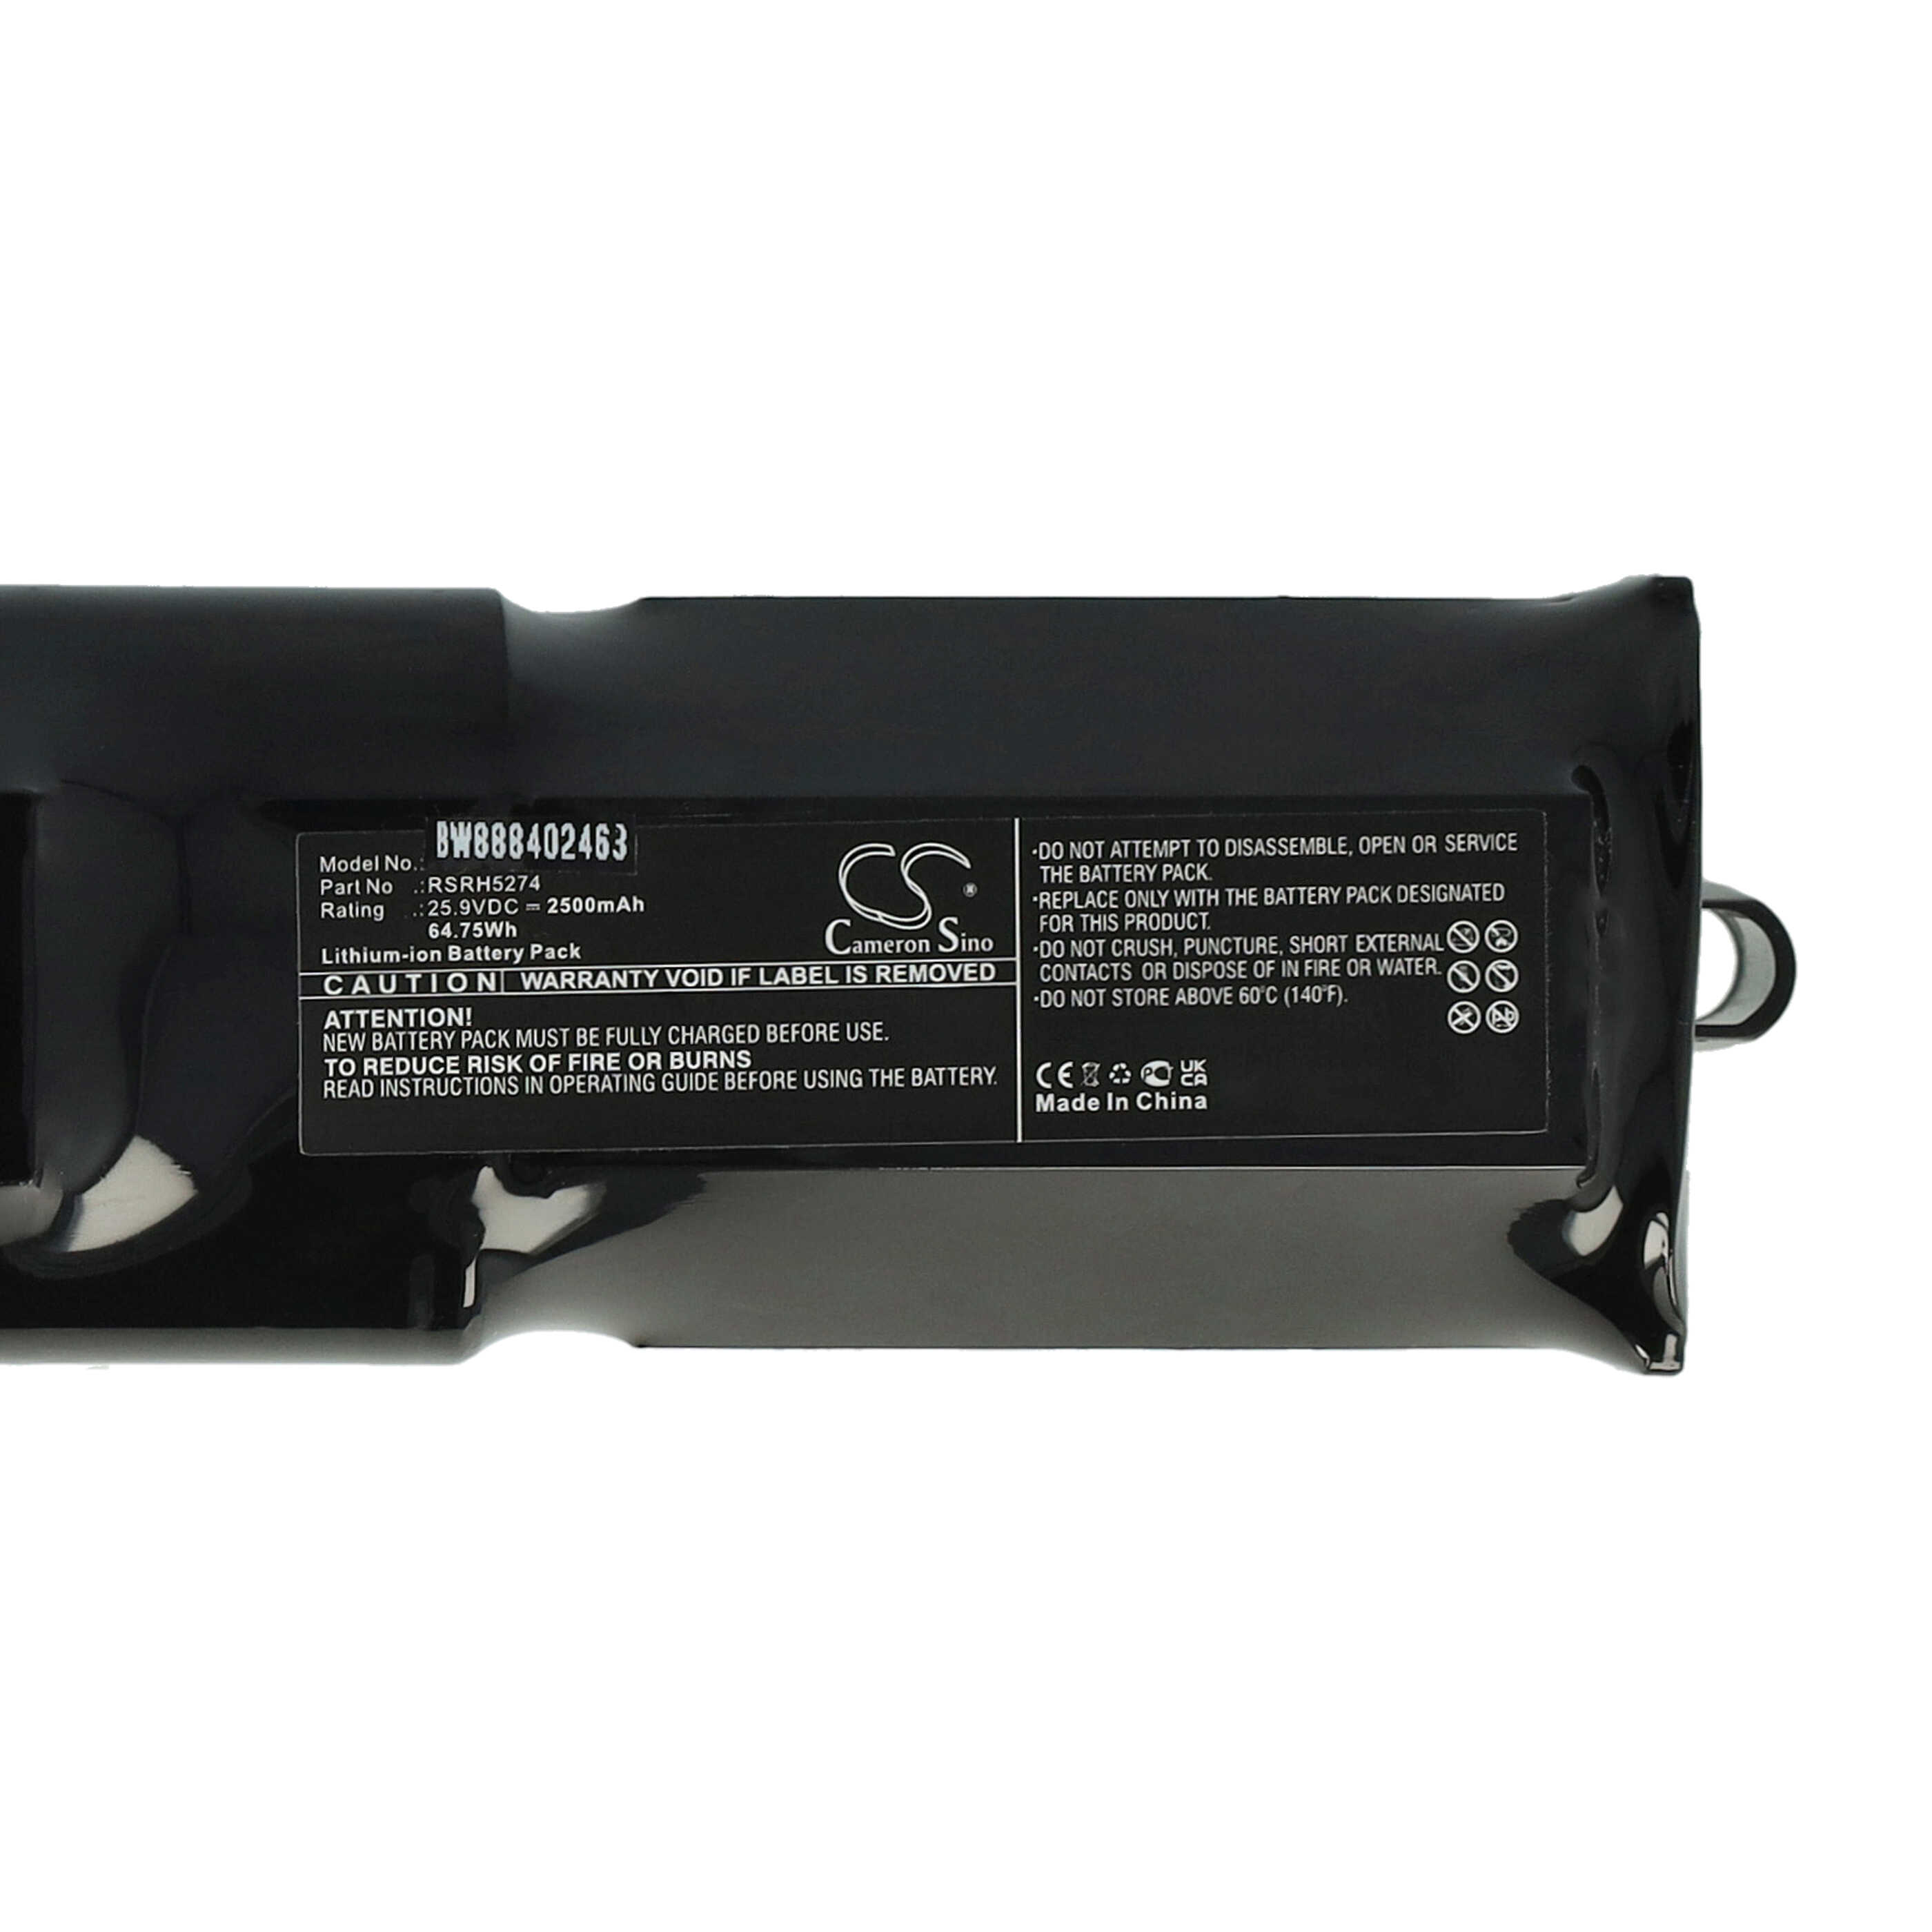 Batterie remplace Rowenta RSRH5274 pour aspirateur - 2500mAh 25,9V Li-ion